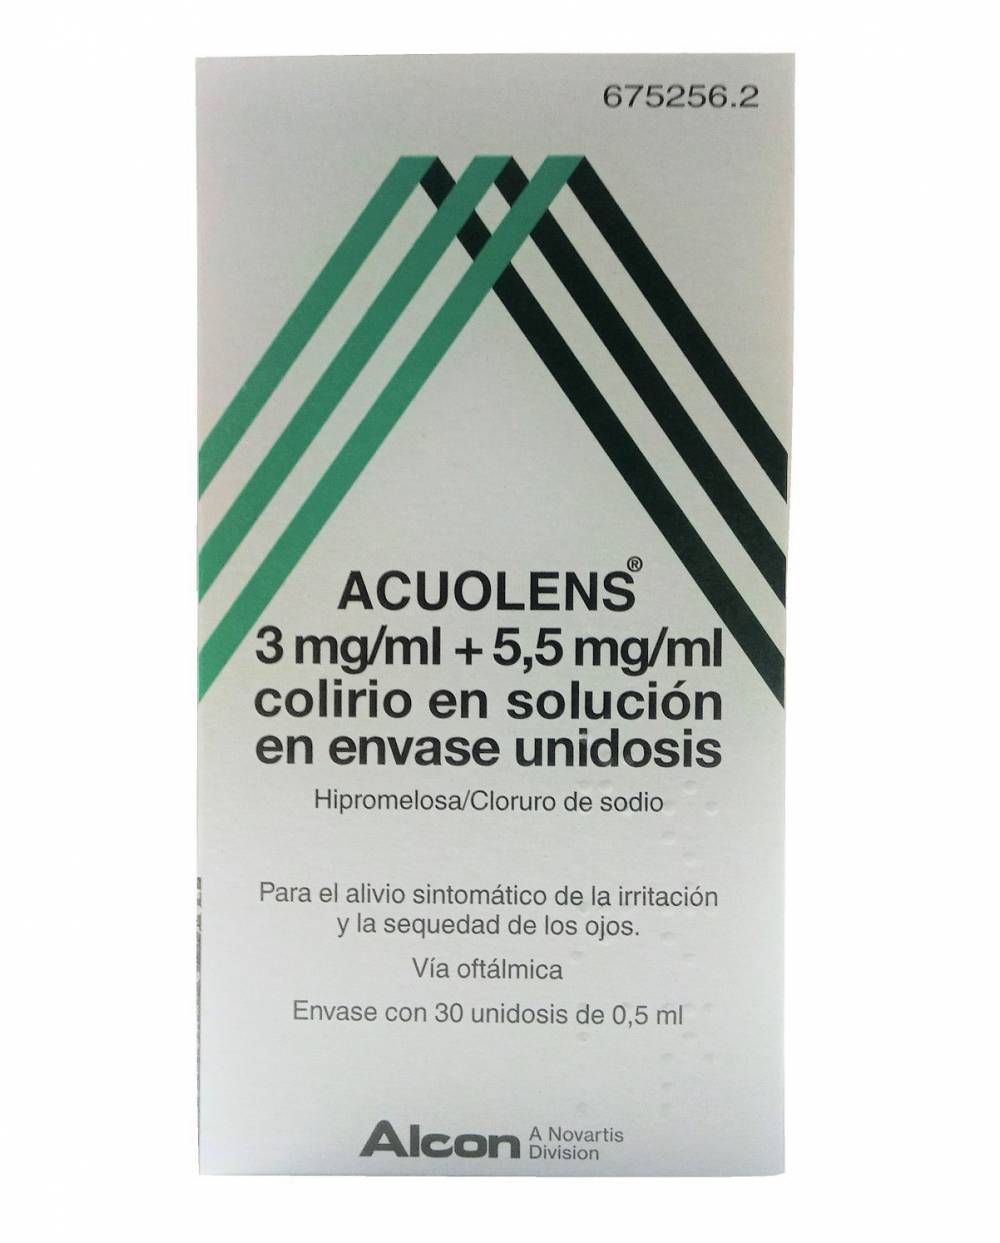 Acuolens - 30 unidosis de 0.5 ml